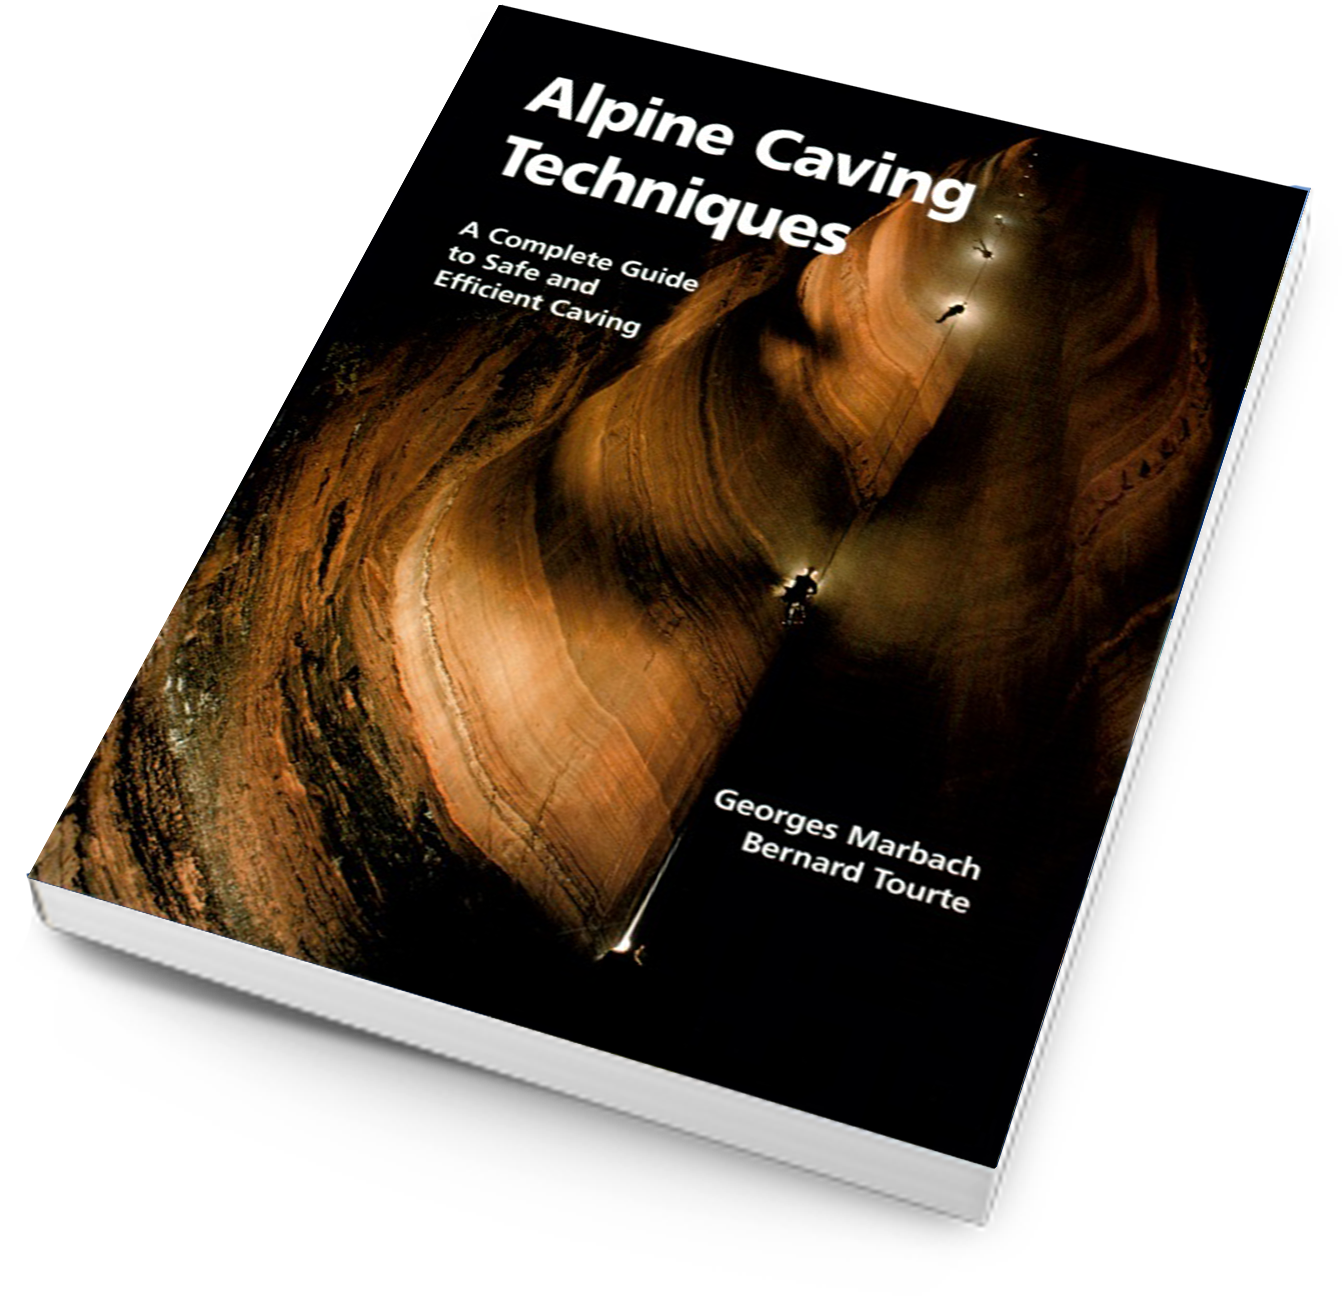 Alpine caving techniques